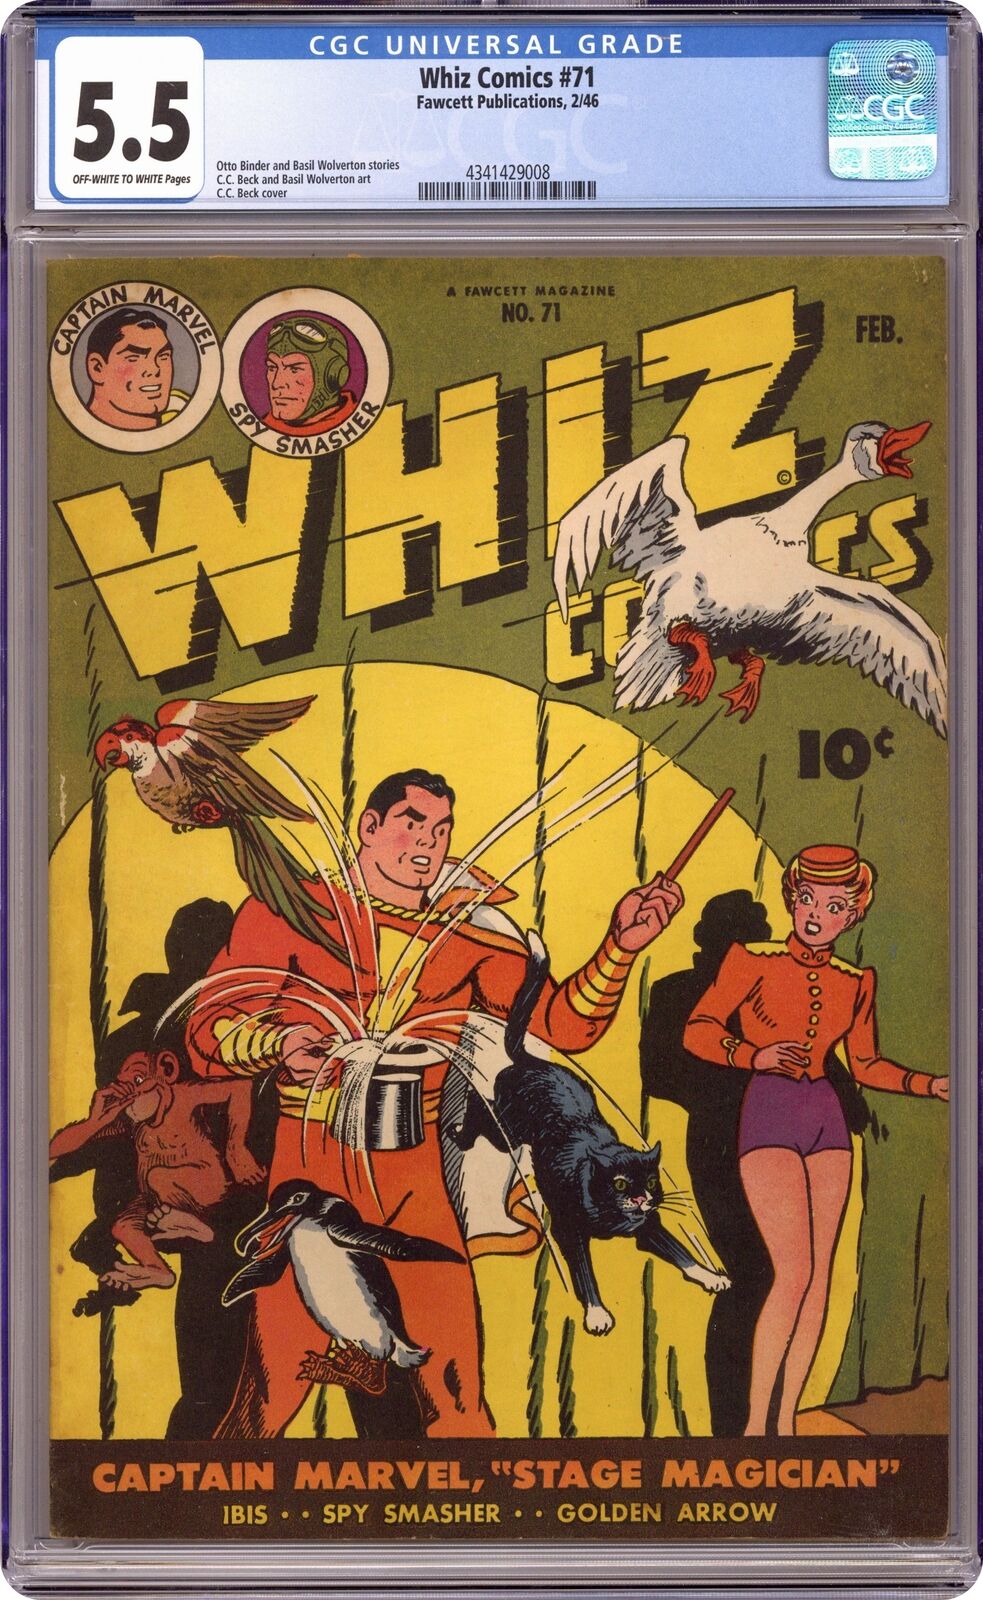 Whiz Comics #71 CGC 5.5 1946 4341429008